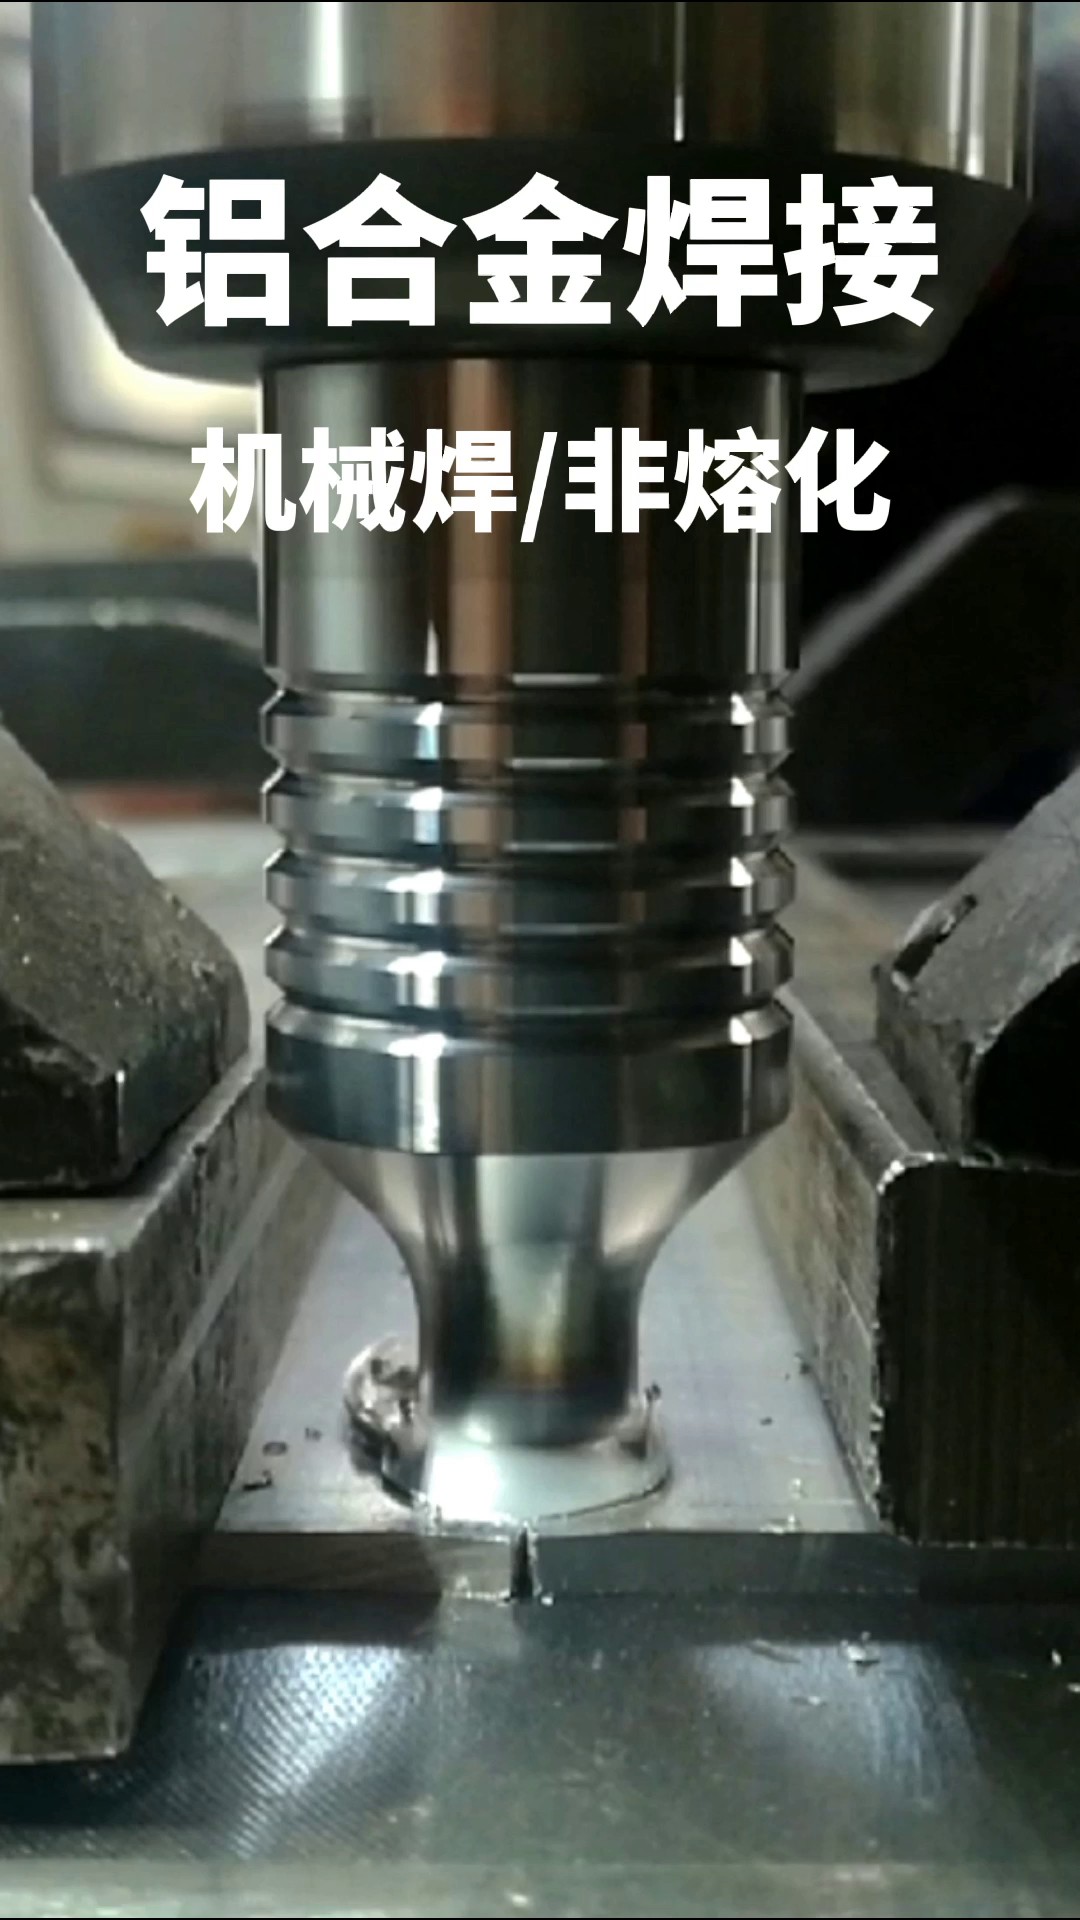 广东购买搅拌摩擦焊设备,搅拌摩擦焊